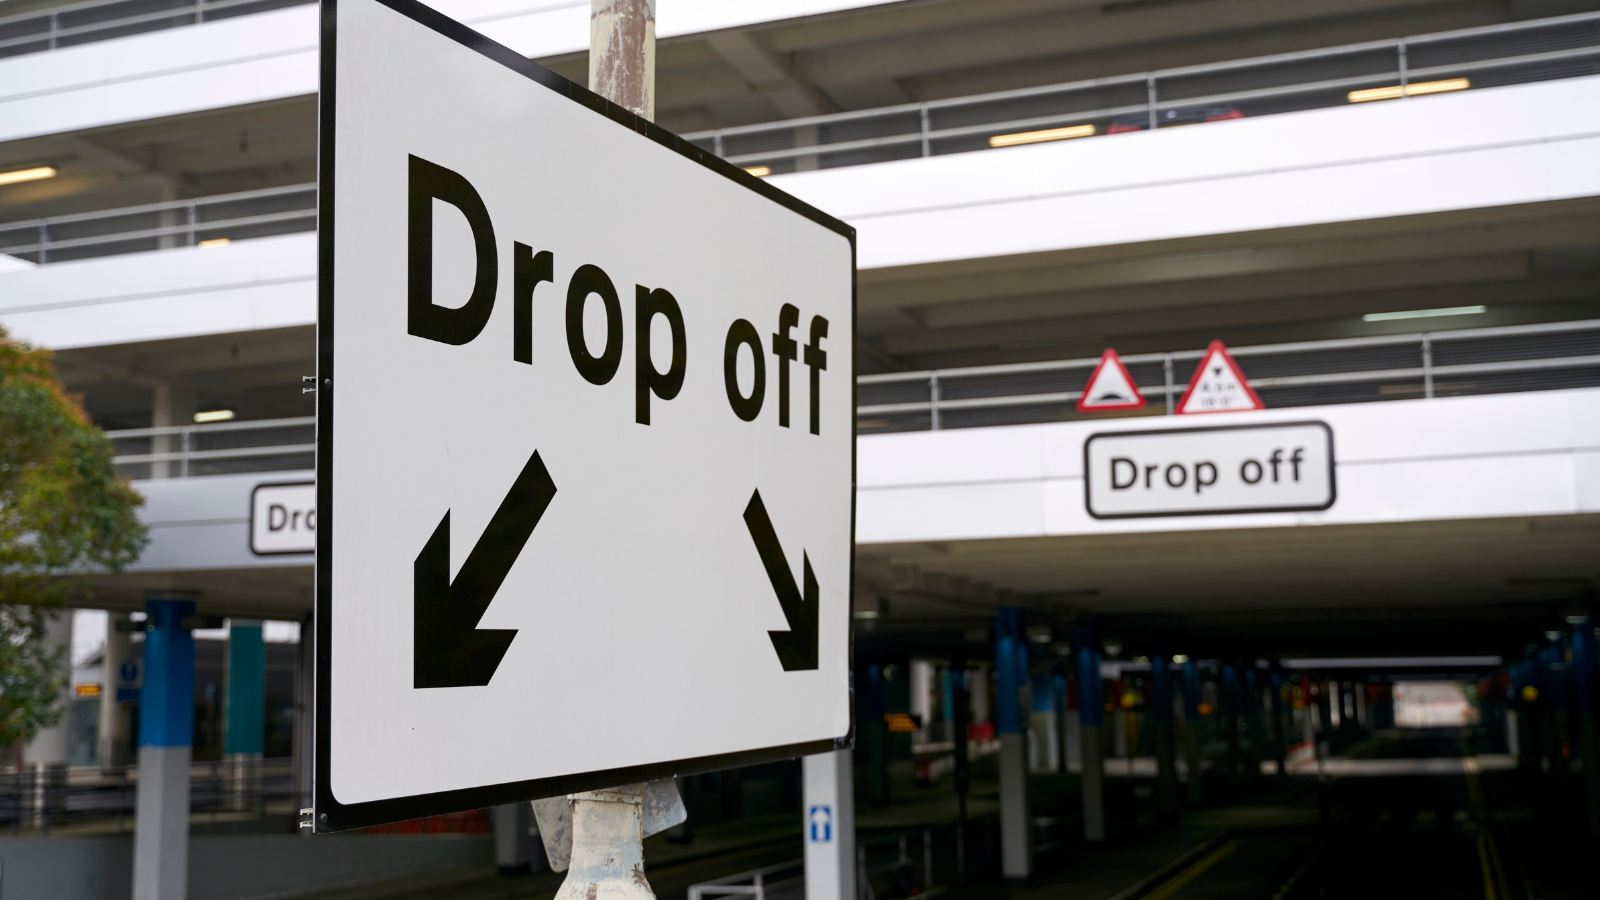 Drop off